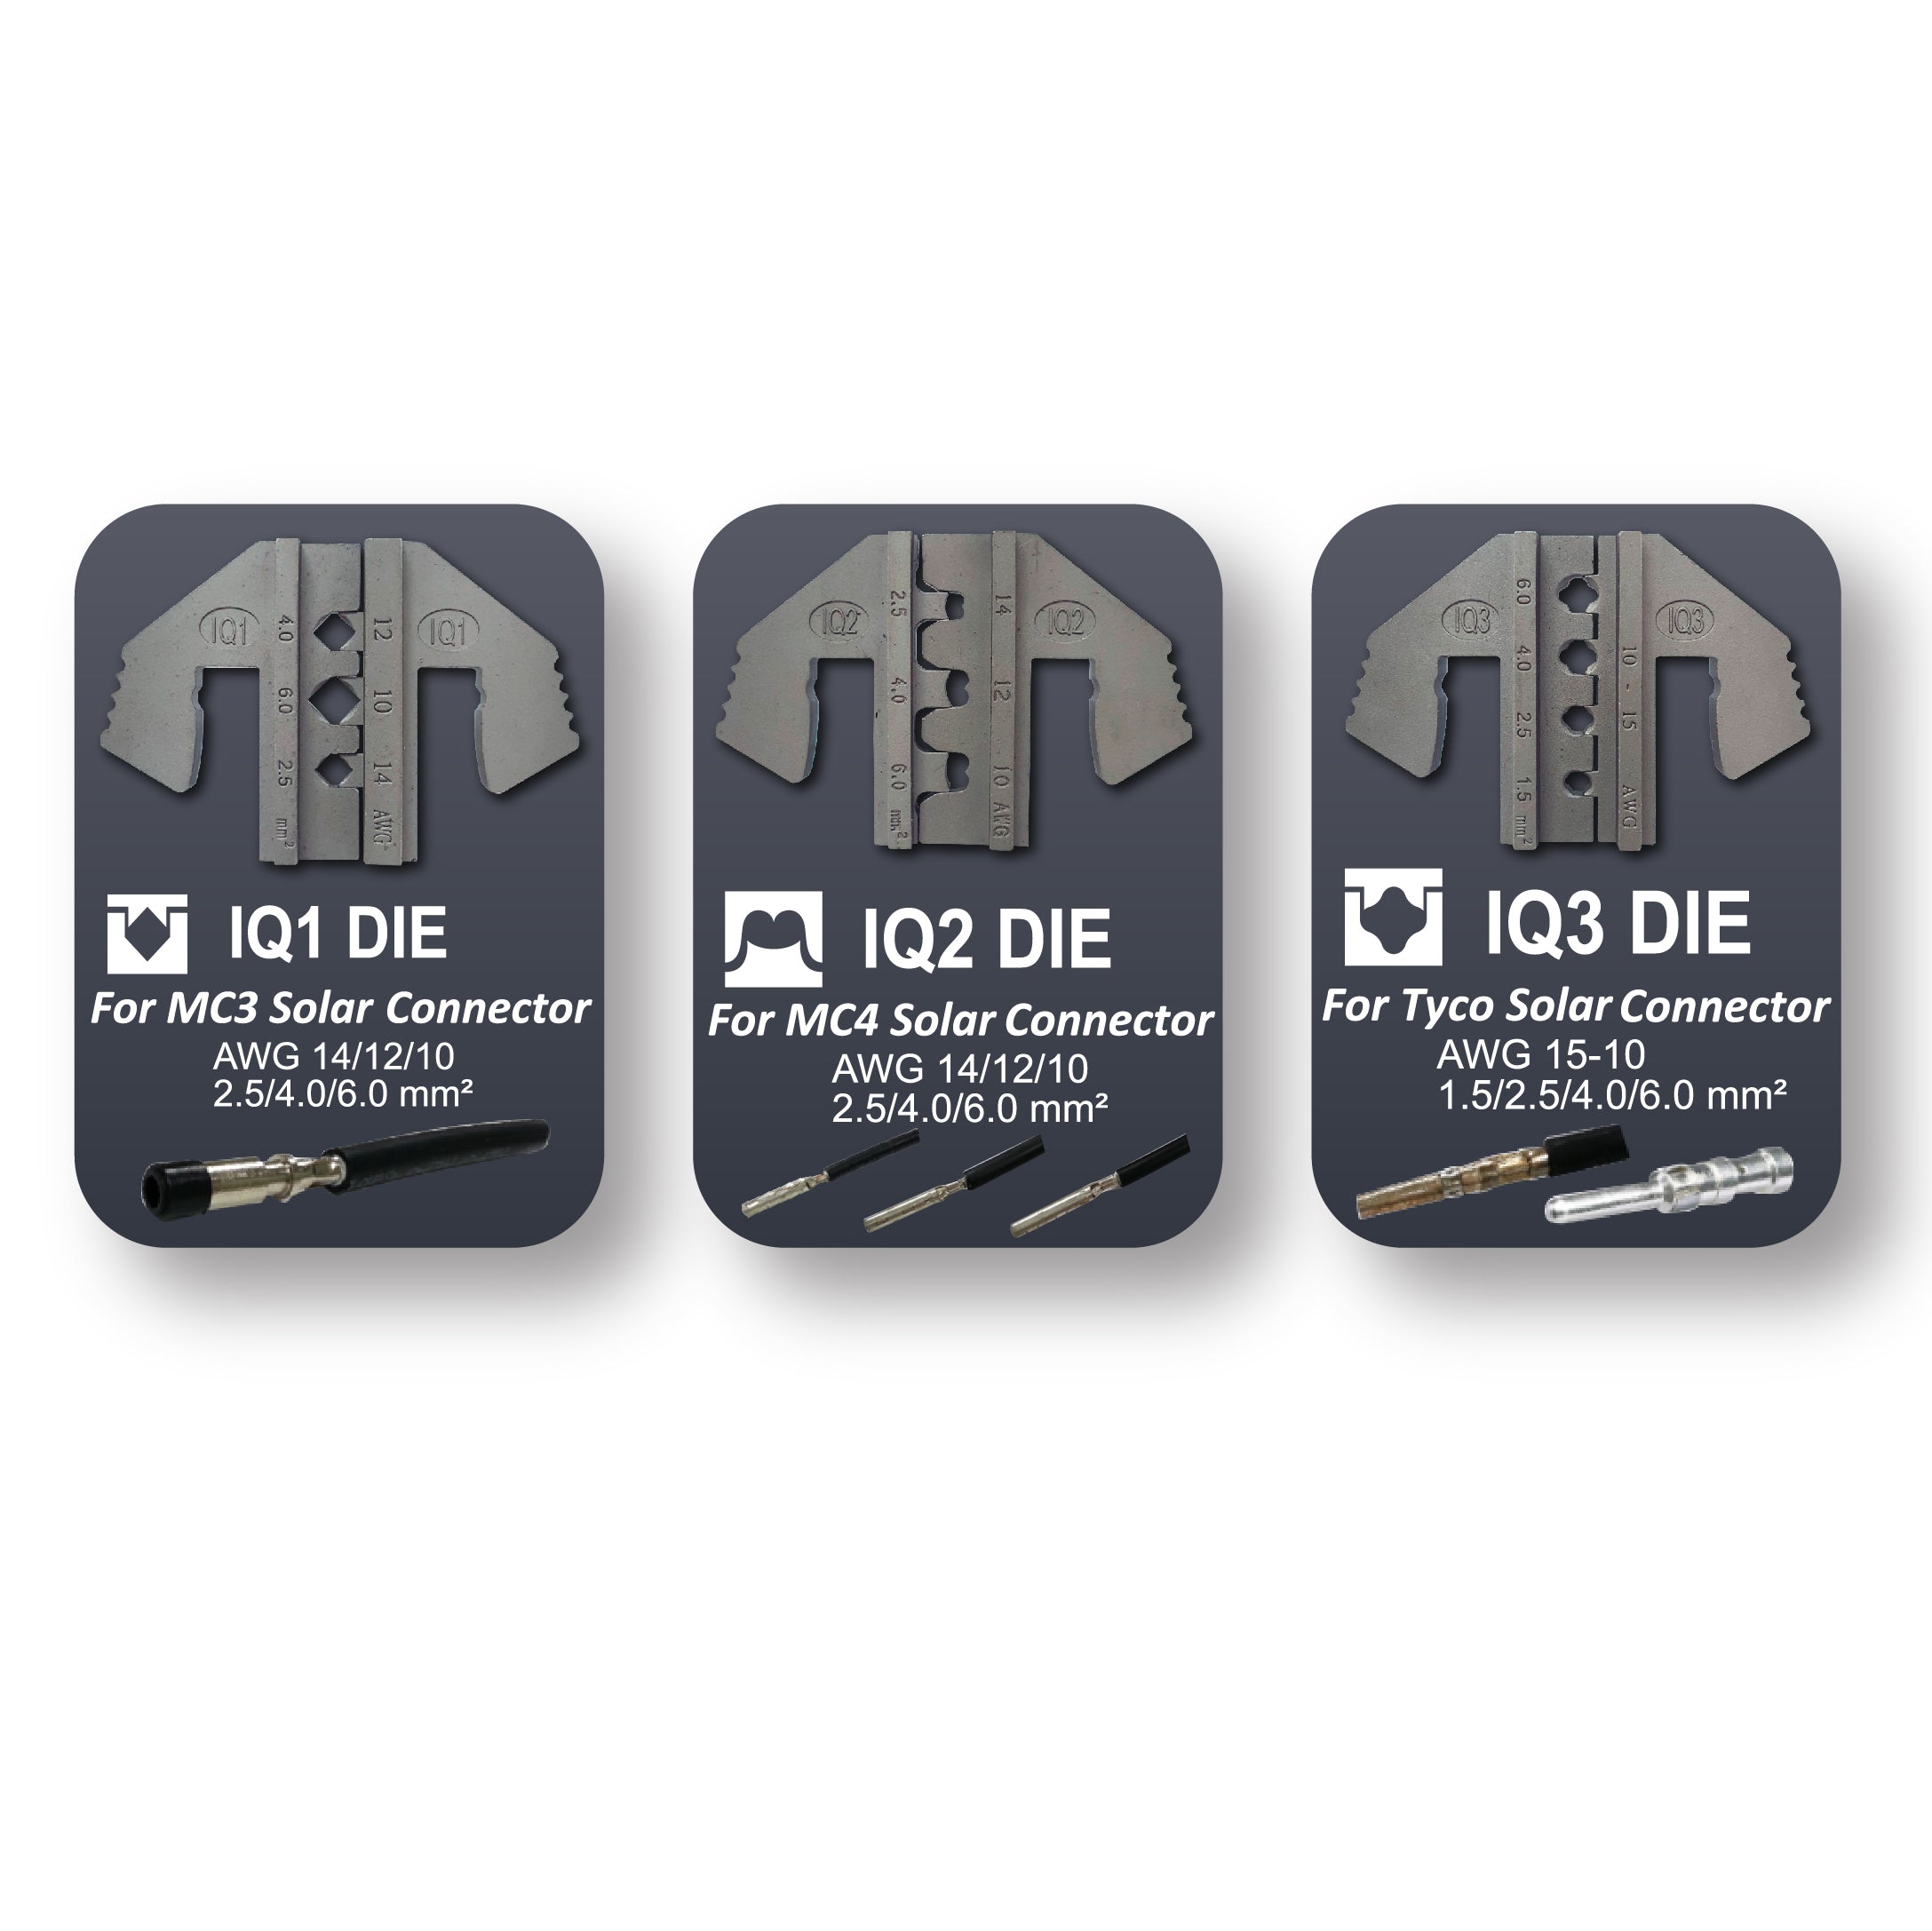 Crimping Tool Die Set - IQ1, IQ2, IQ3 Dies for MC3, MC4, Tyco Solar Connectors - Tool Guy Republic